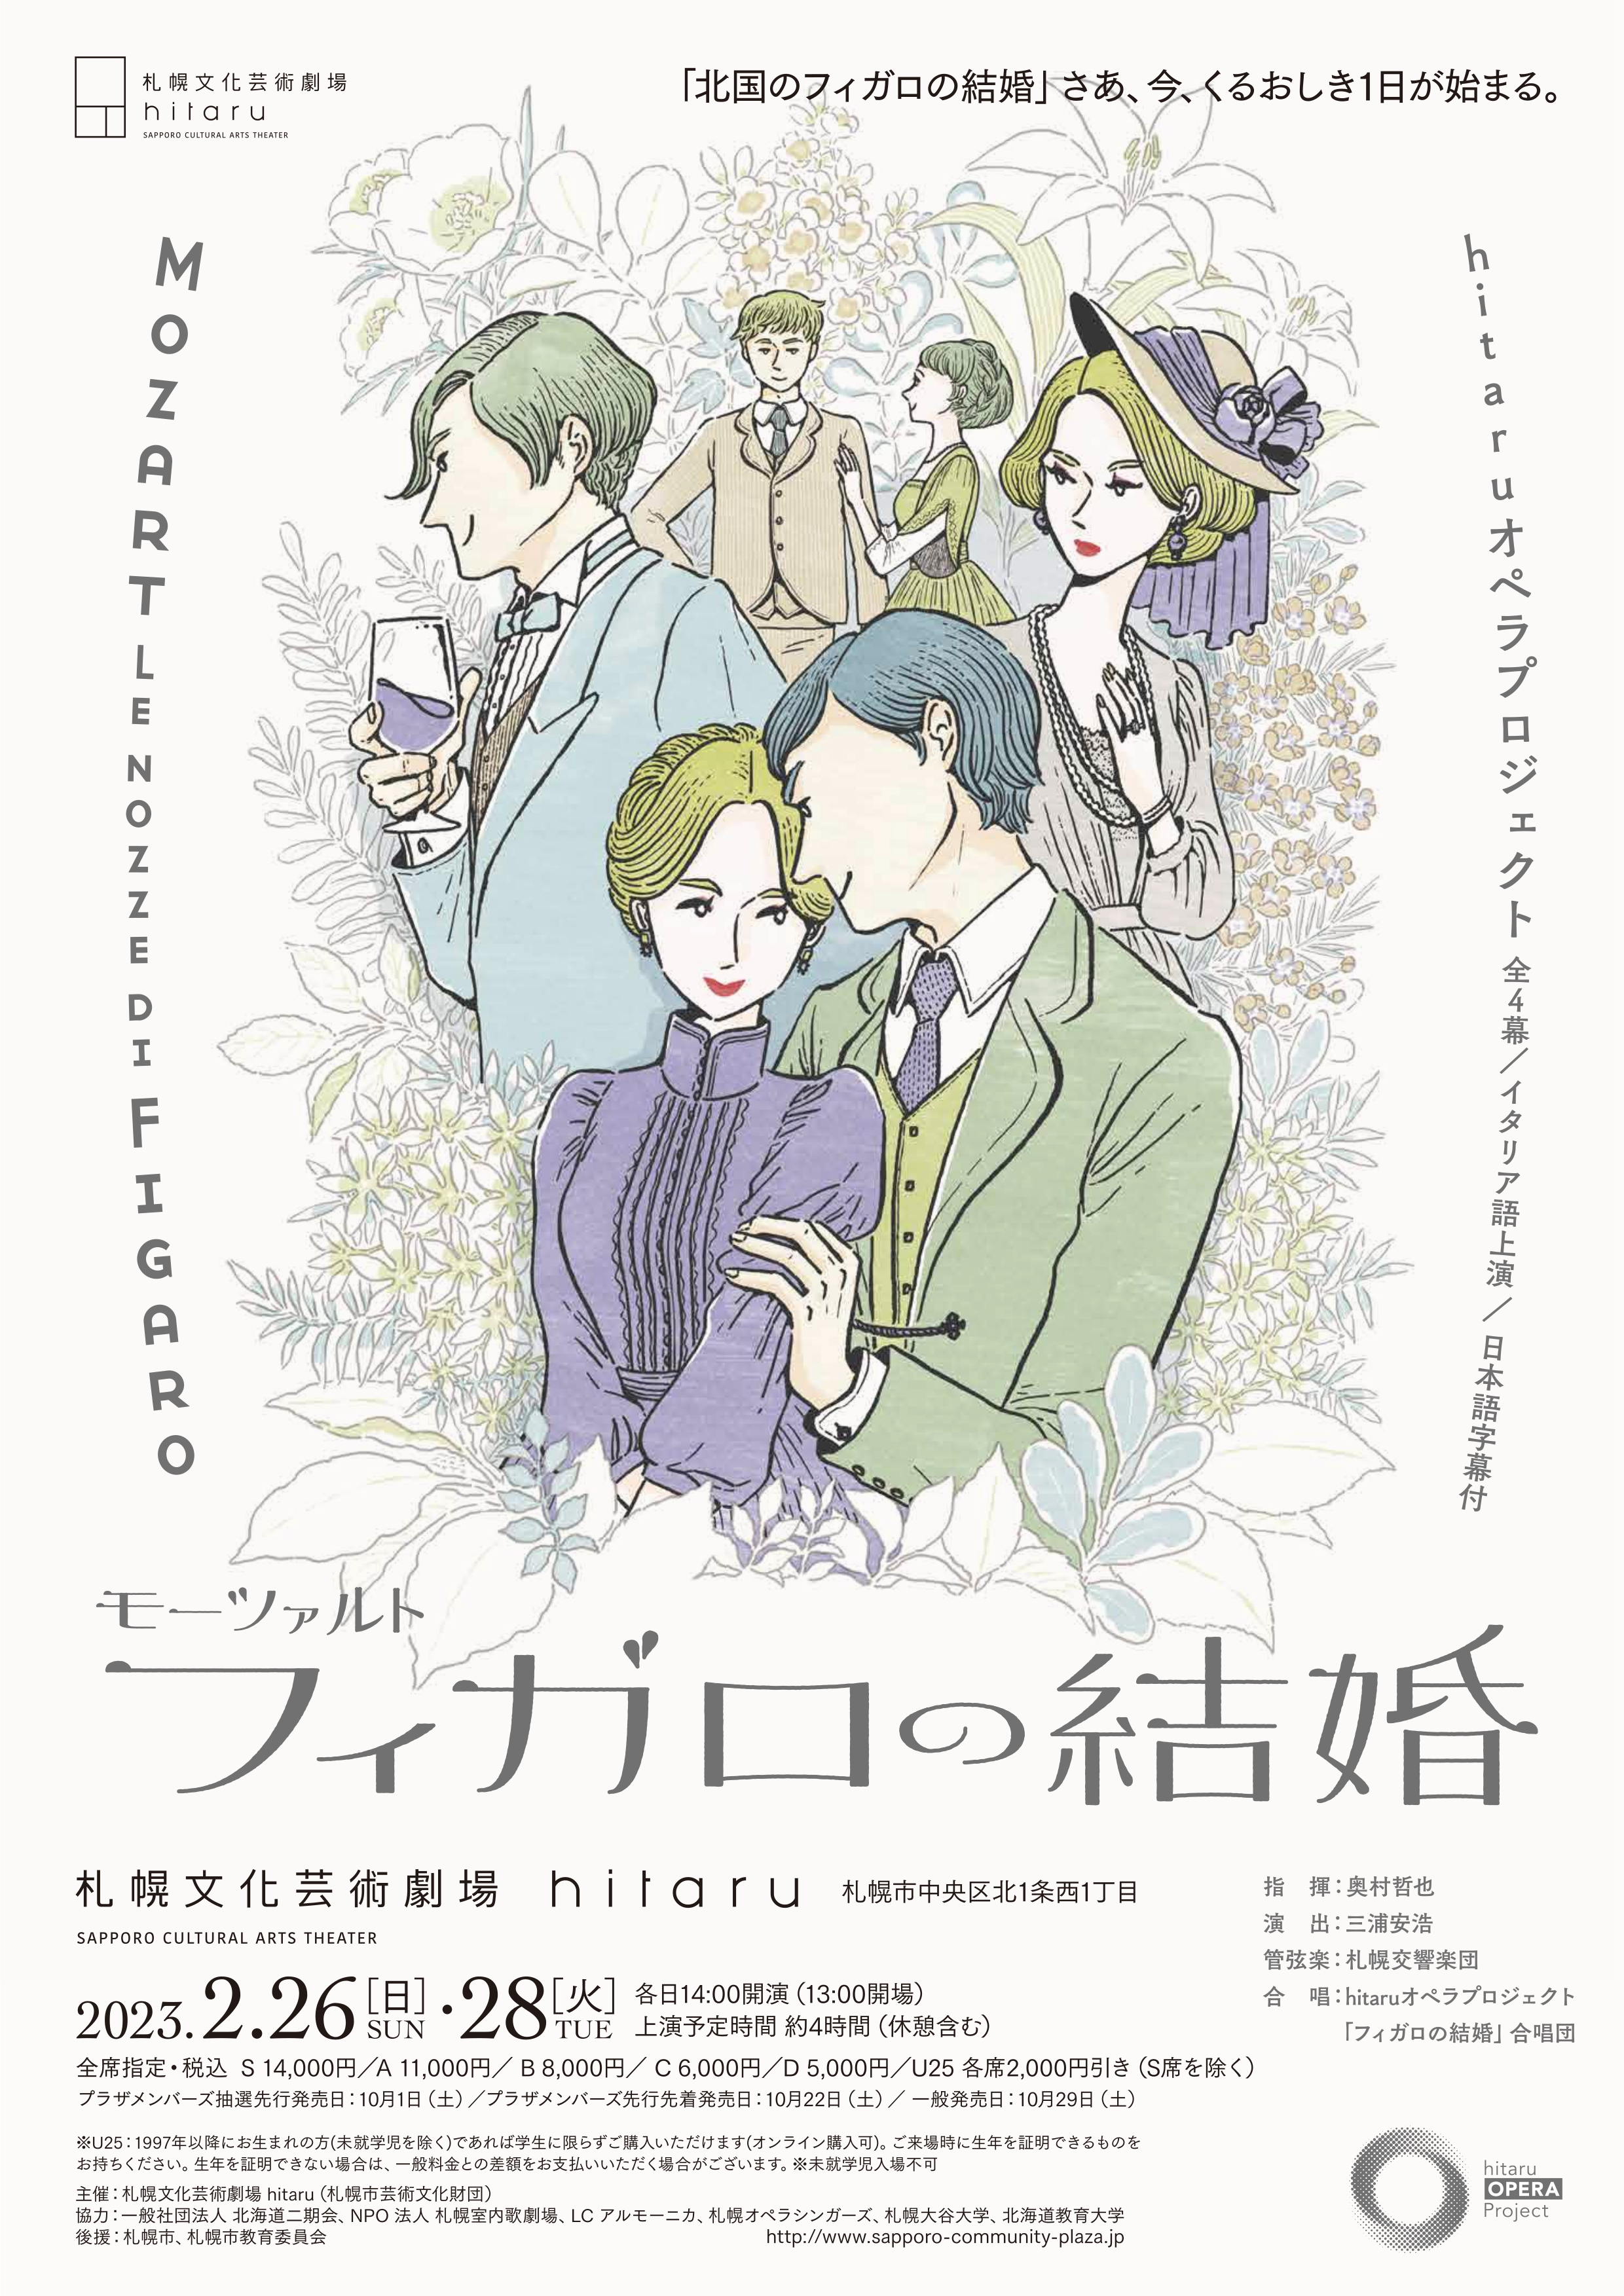 hitaruオペラプロジェクト モーツァルト「フィガロの結婚」 (全4幕・イタリア語上演、日本語字幕付)イメージ画像